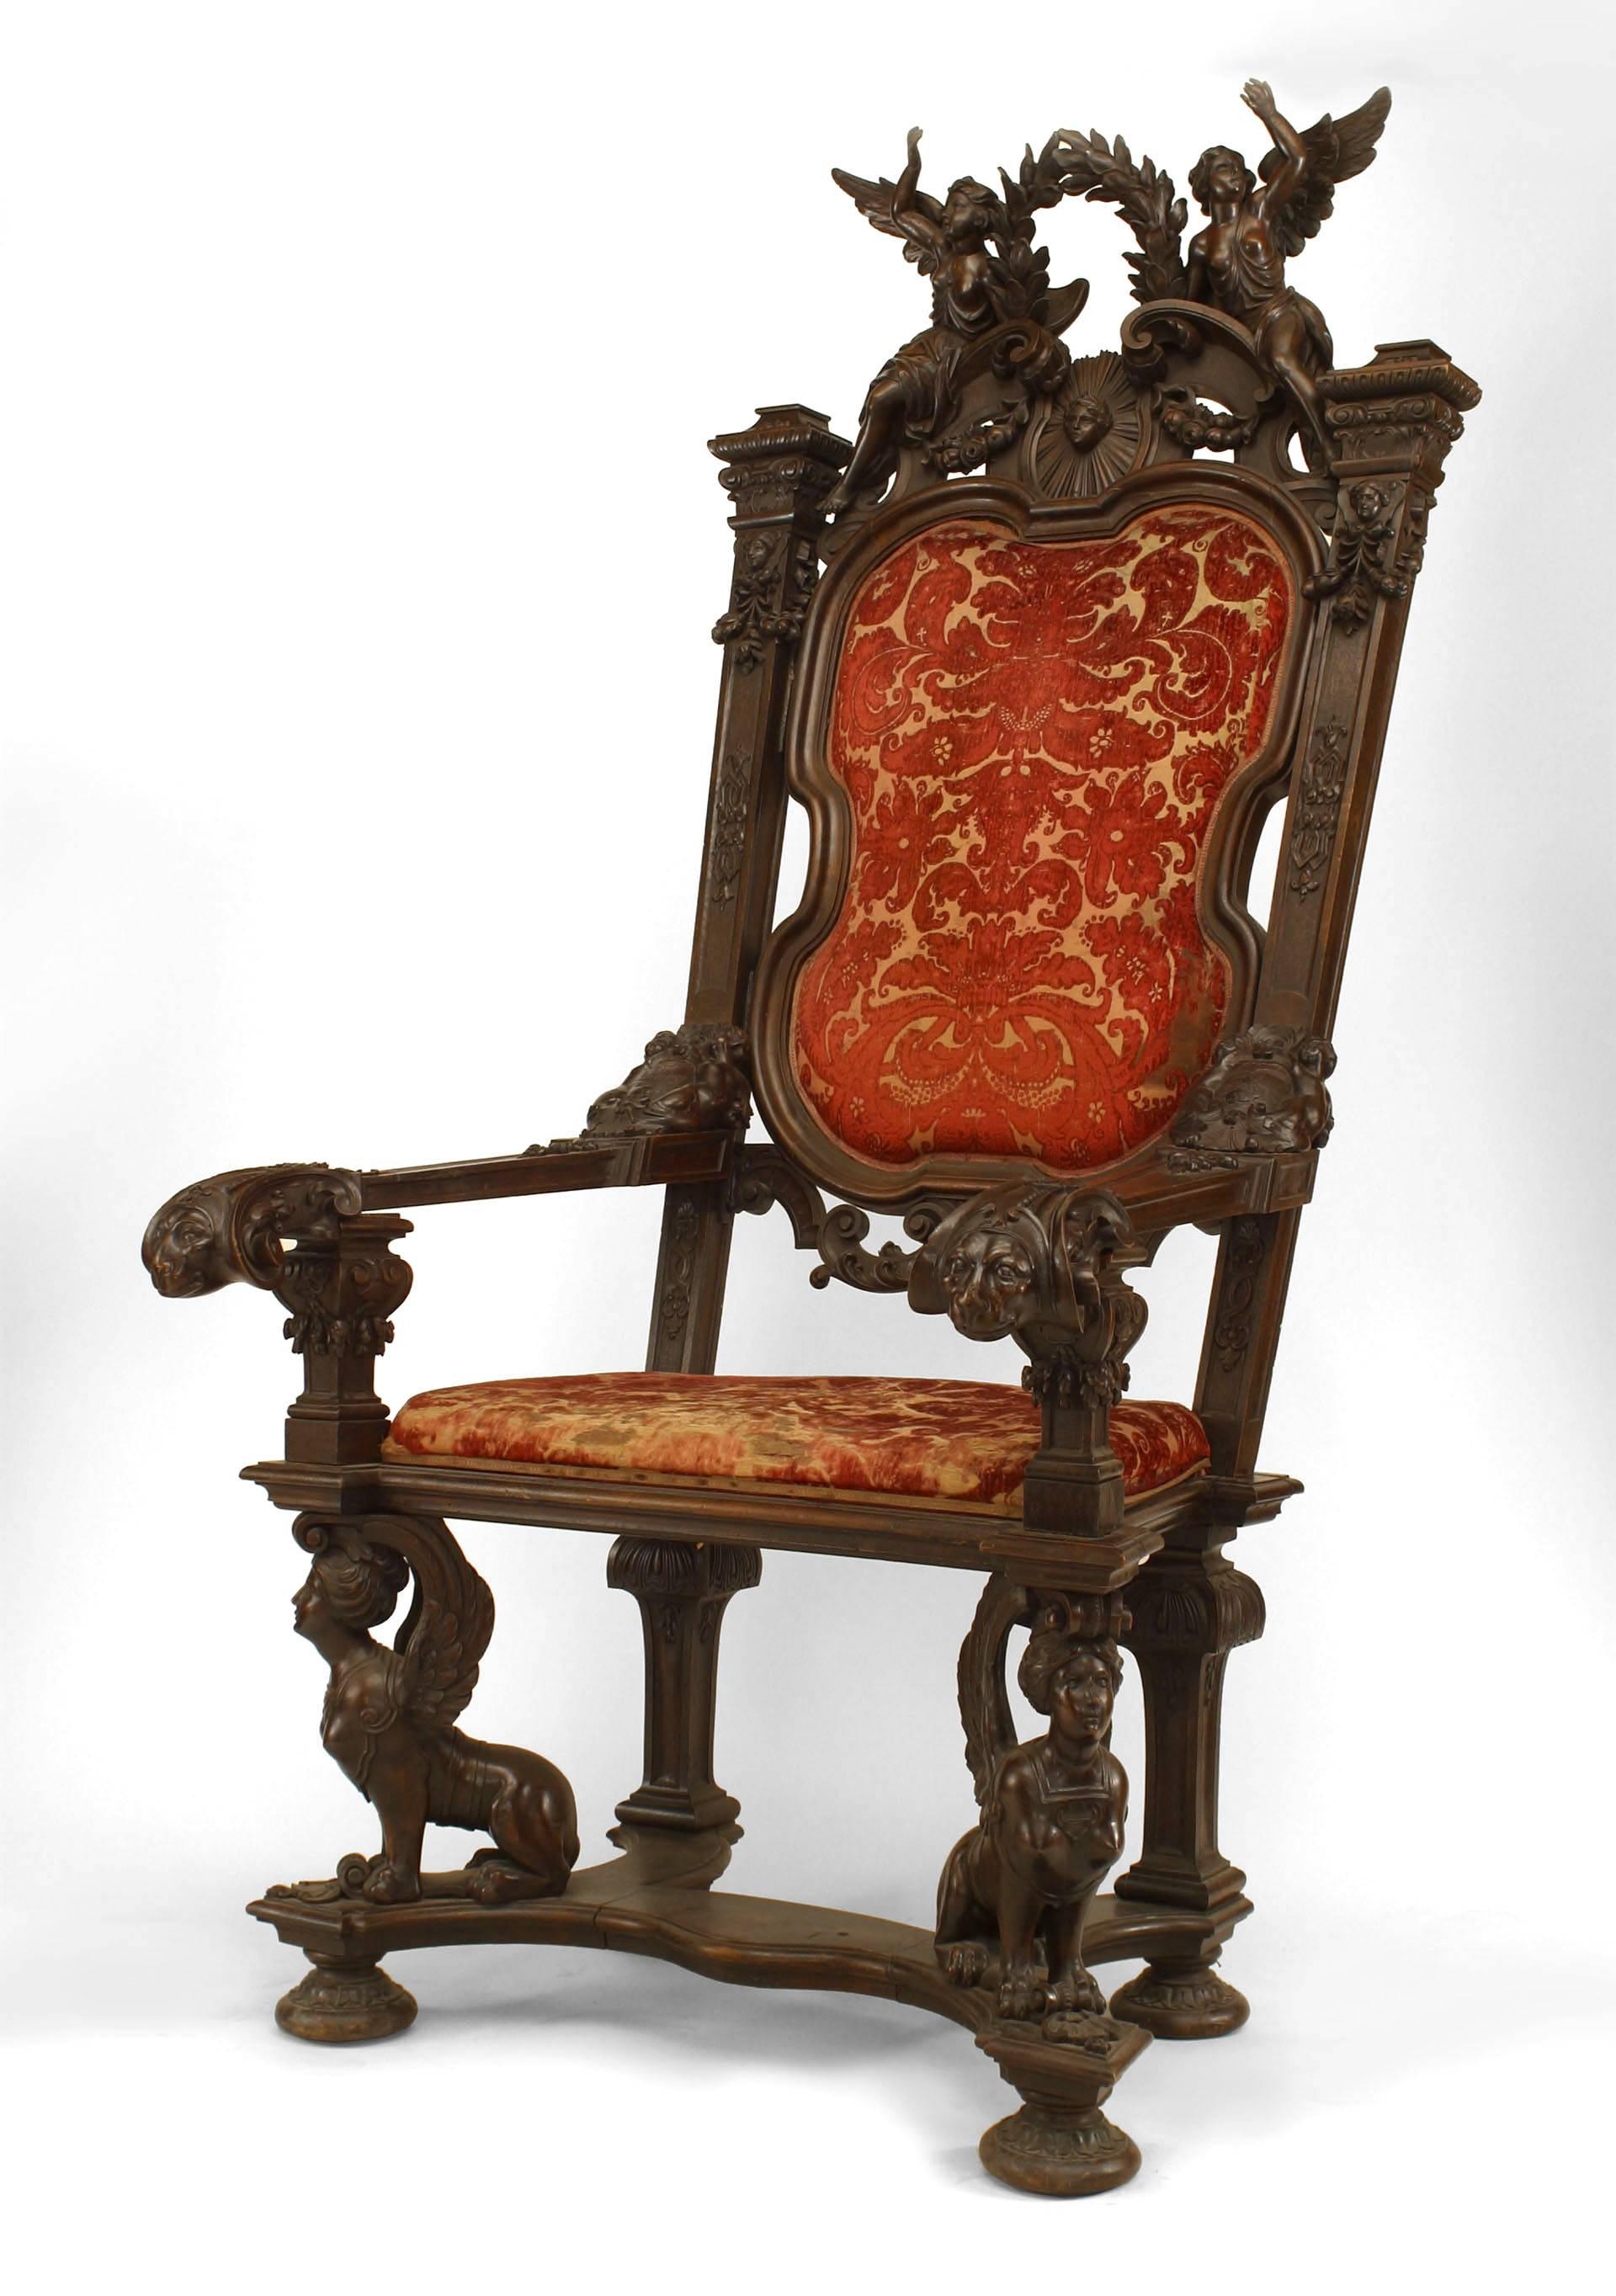 Fauteuil trône monumental en noyer de style Empire français (19ème siècle) avec figure sculptée avec couronne et tapisserie en velours rouge.
